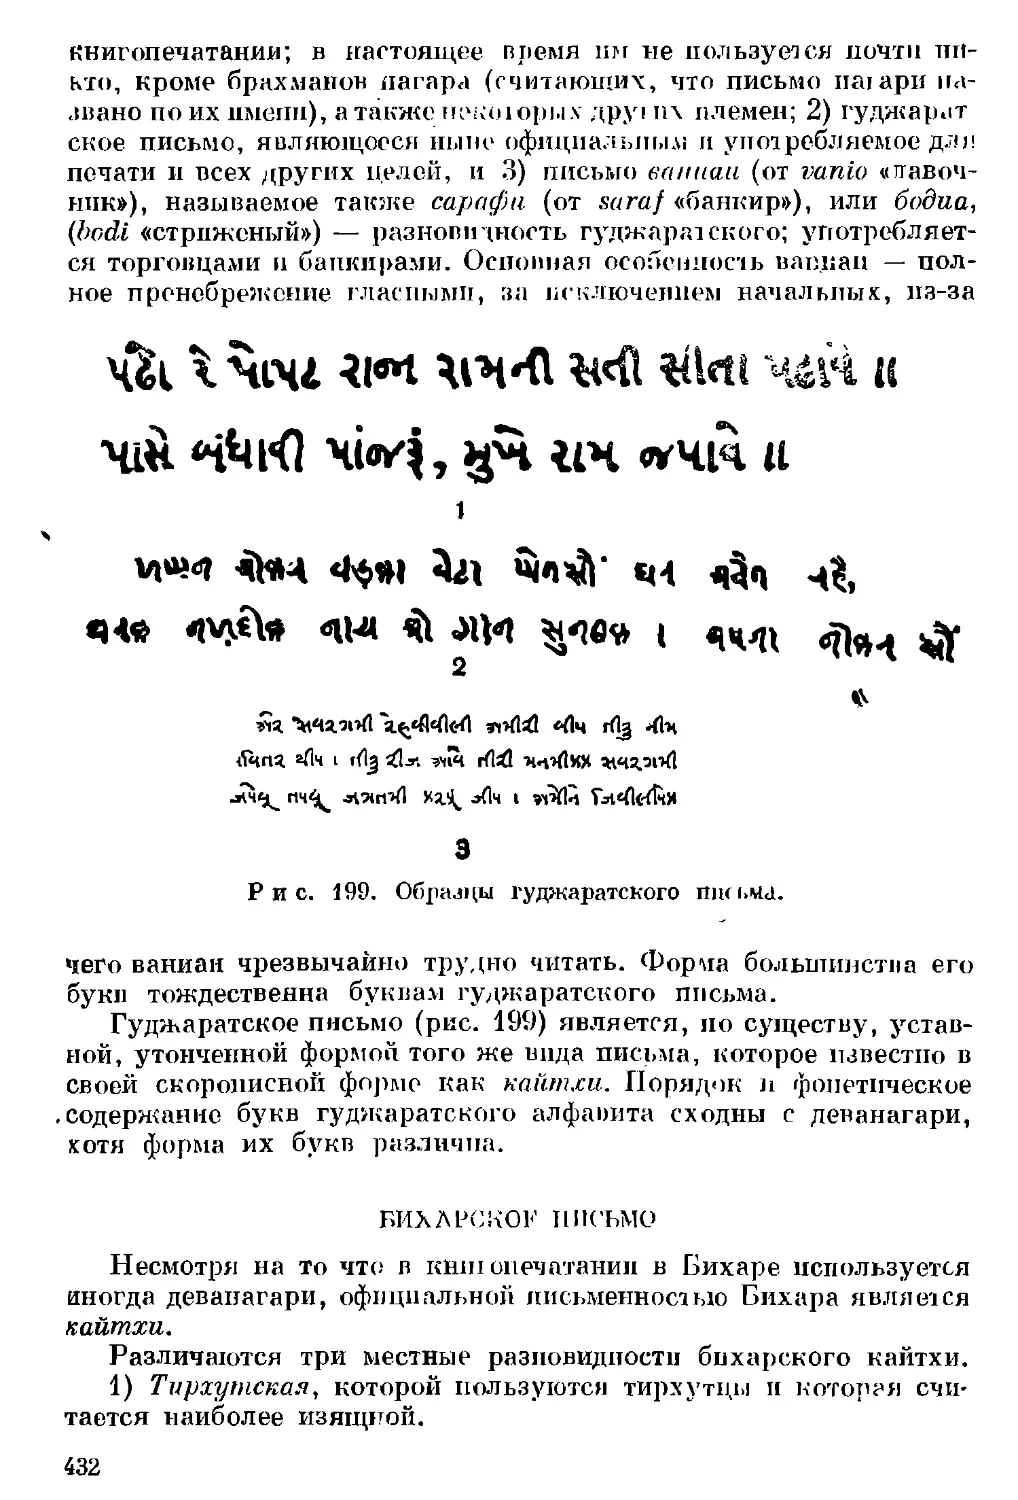 Бихарское письмо